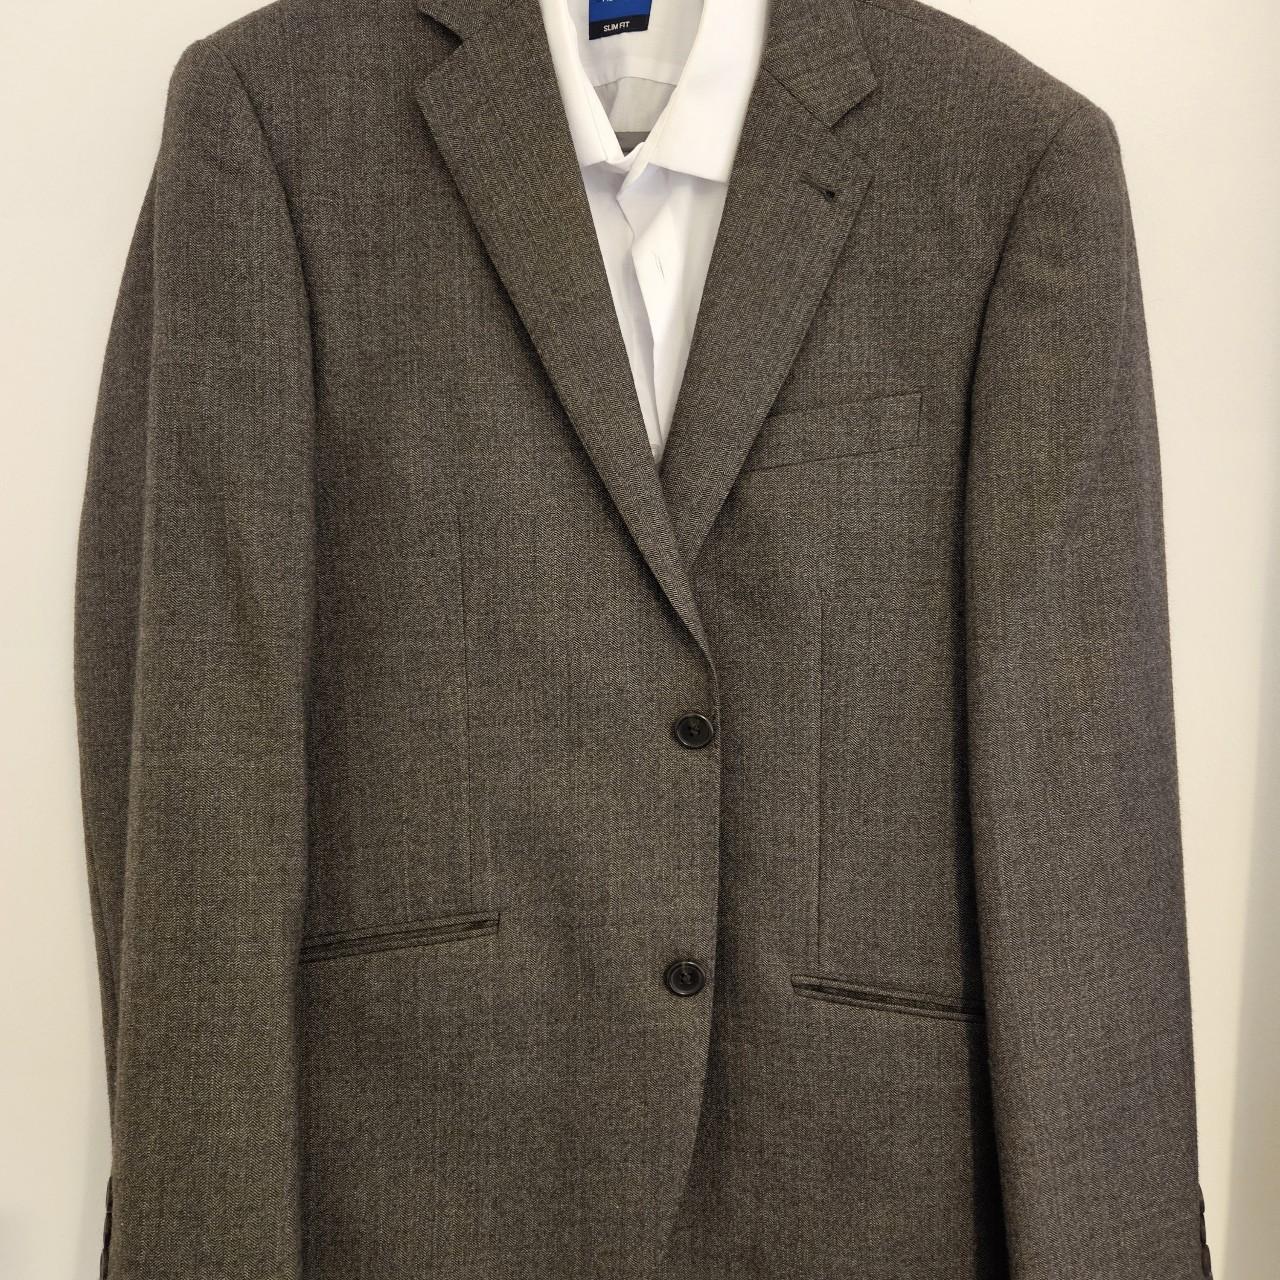 Mens Herringbone Style Next Suit 40S/34R- only worn... - Depop